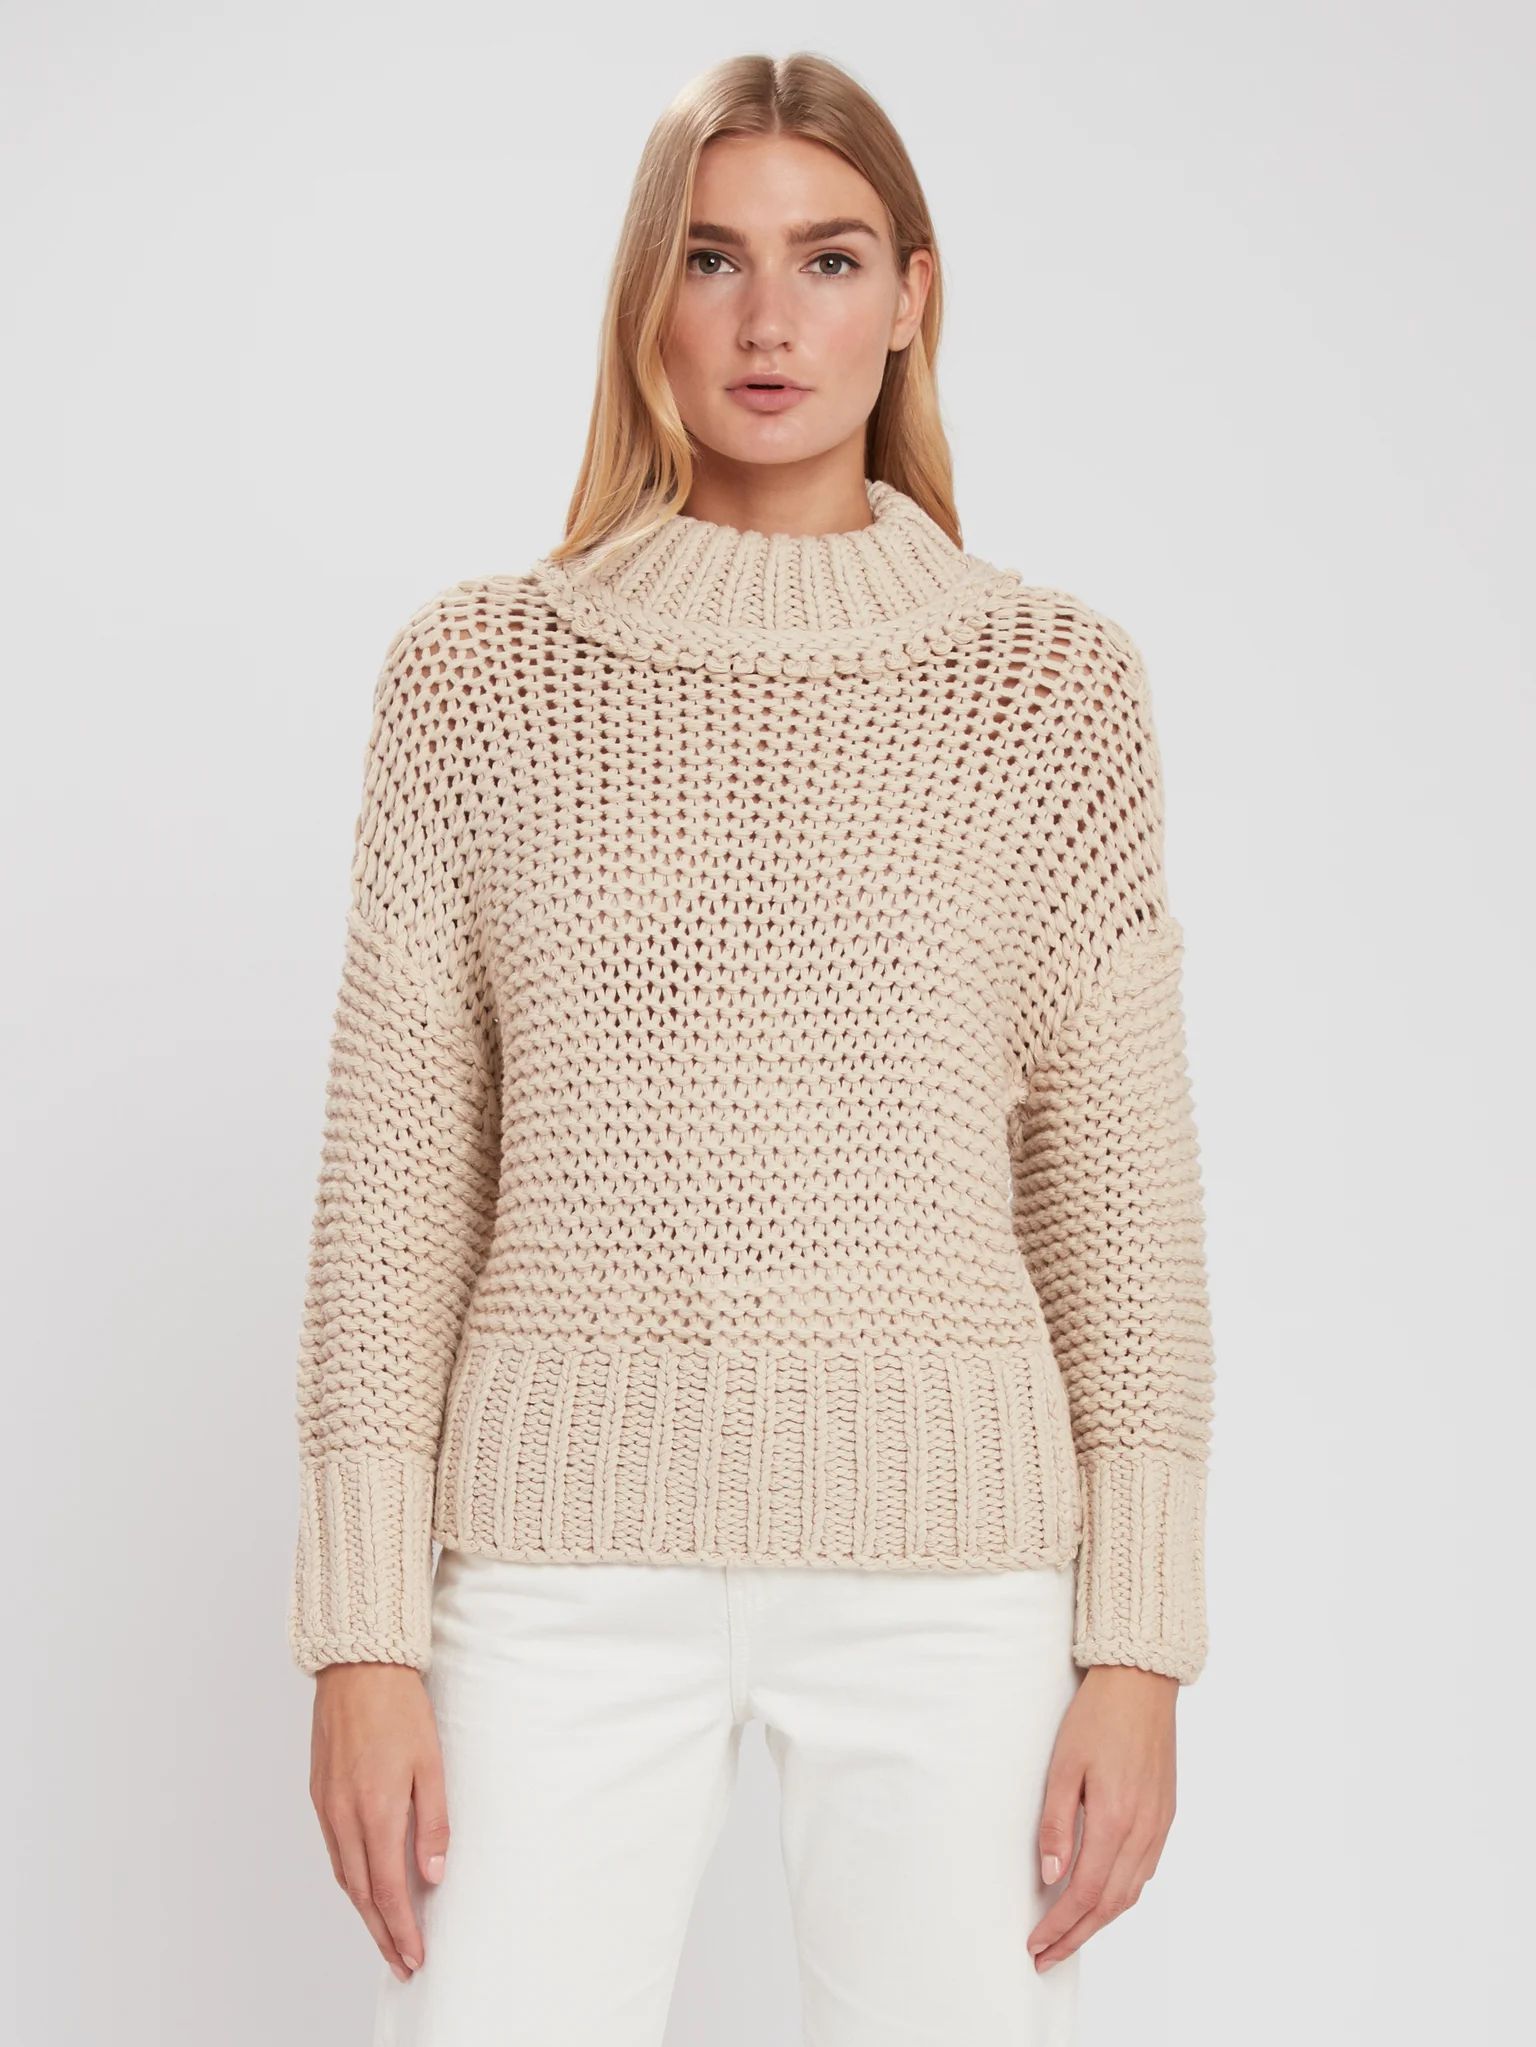 My Only Sunshine Crop Knit Sweater | Verishop